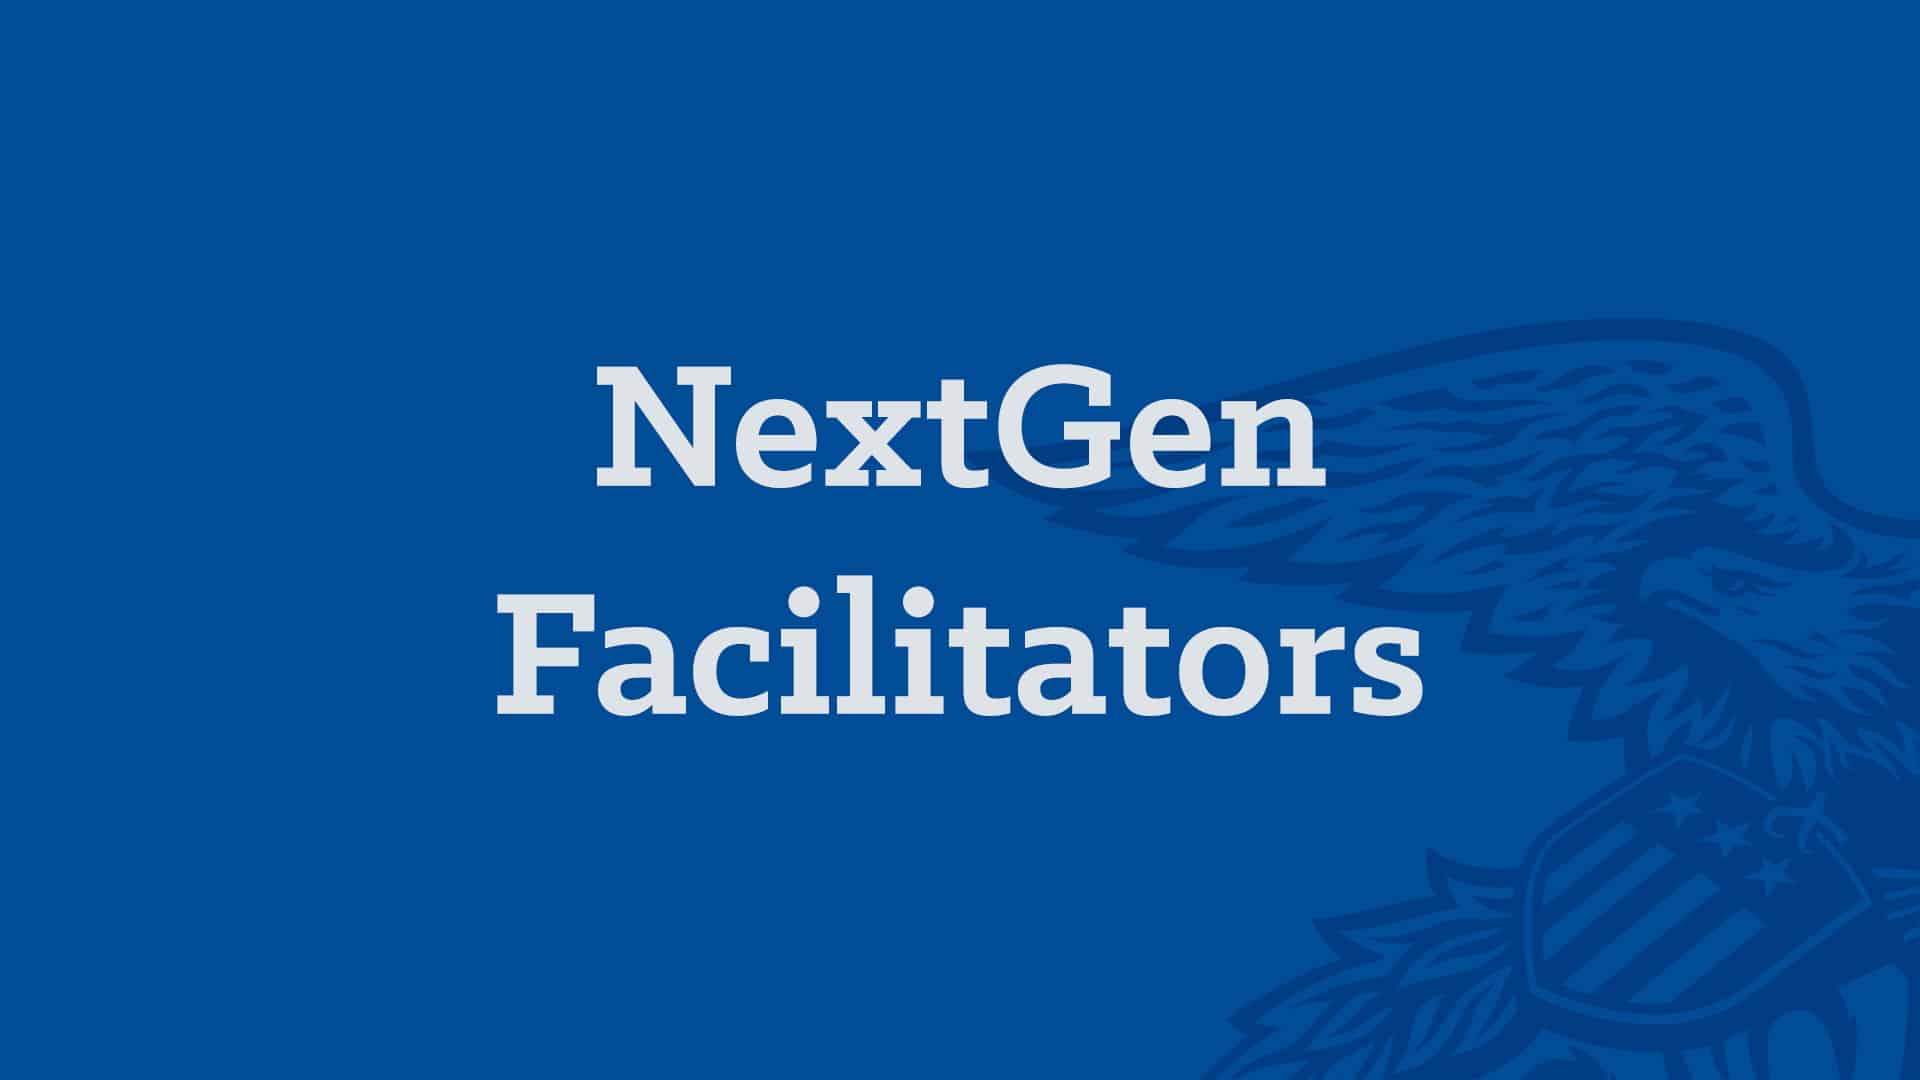 NextGen Facilitators